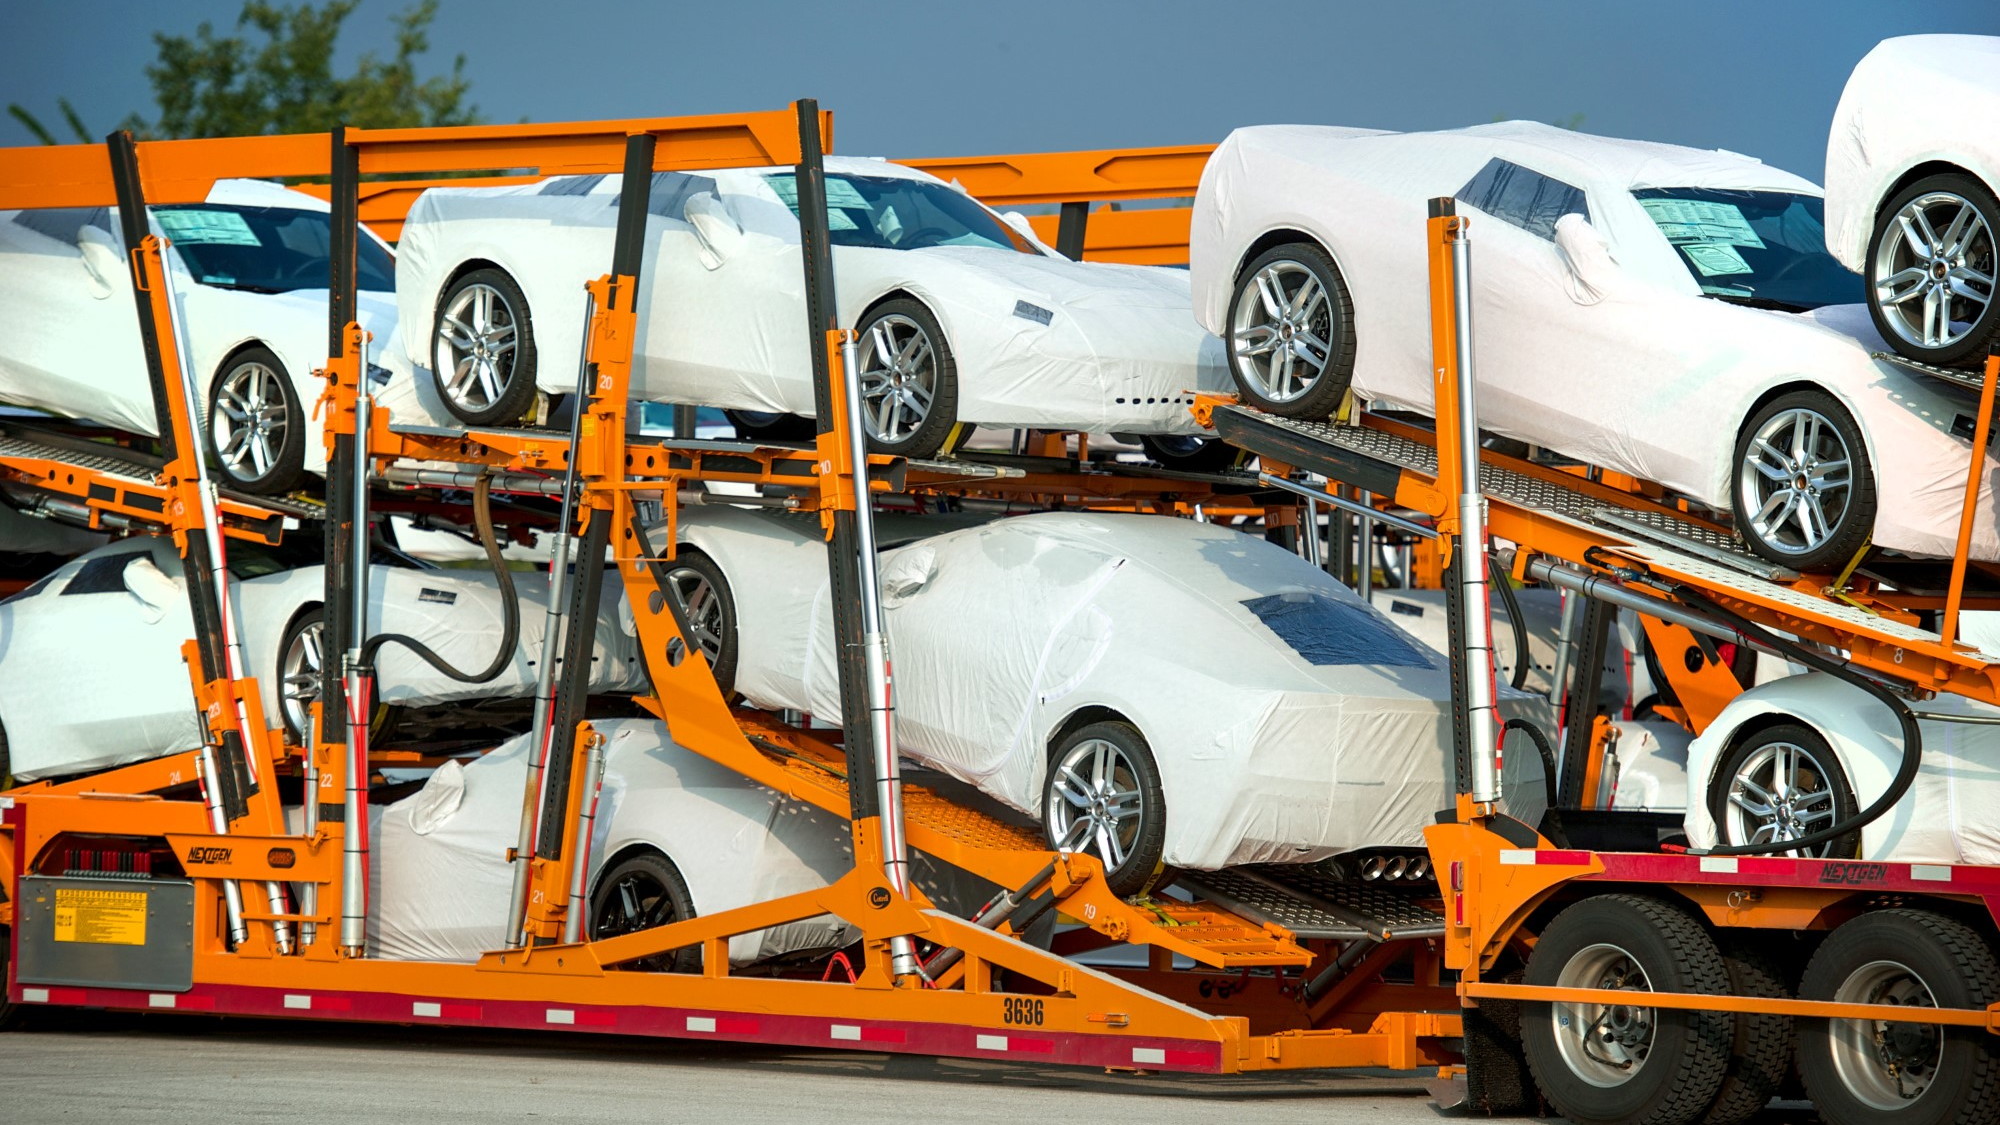 2014 Chevrolet Corvette Stingray begins shipments to dealers